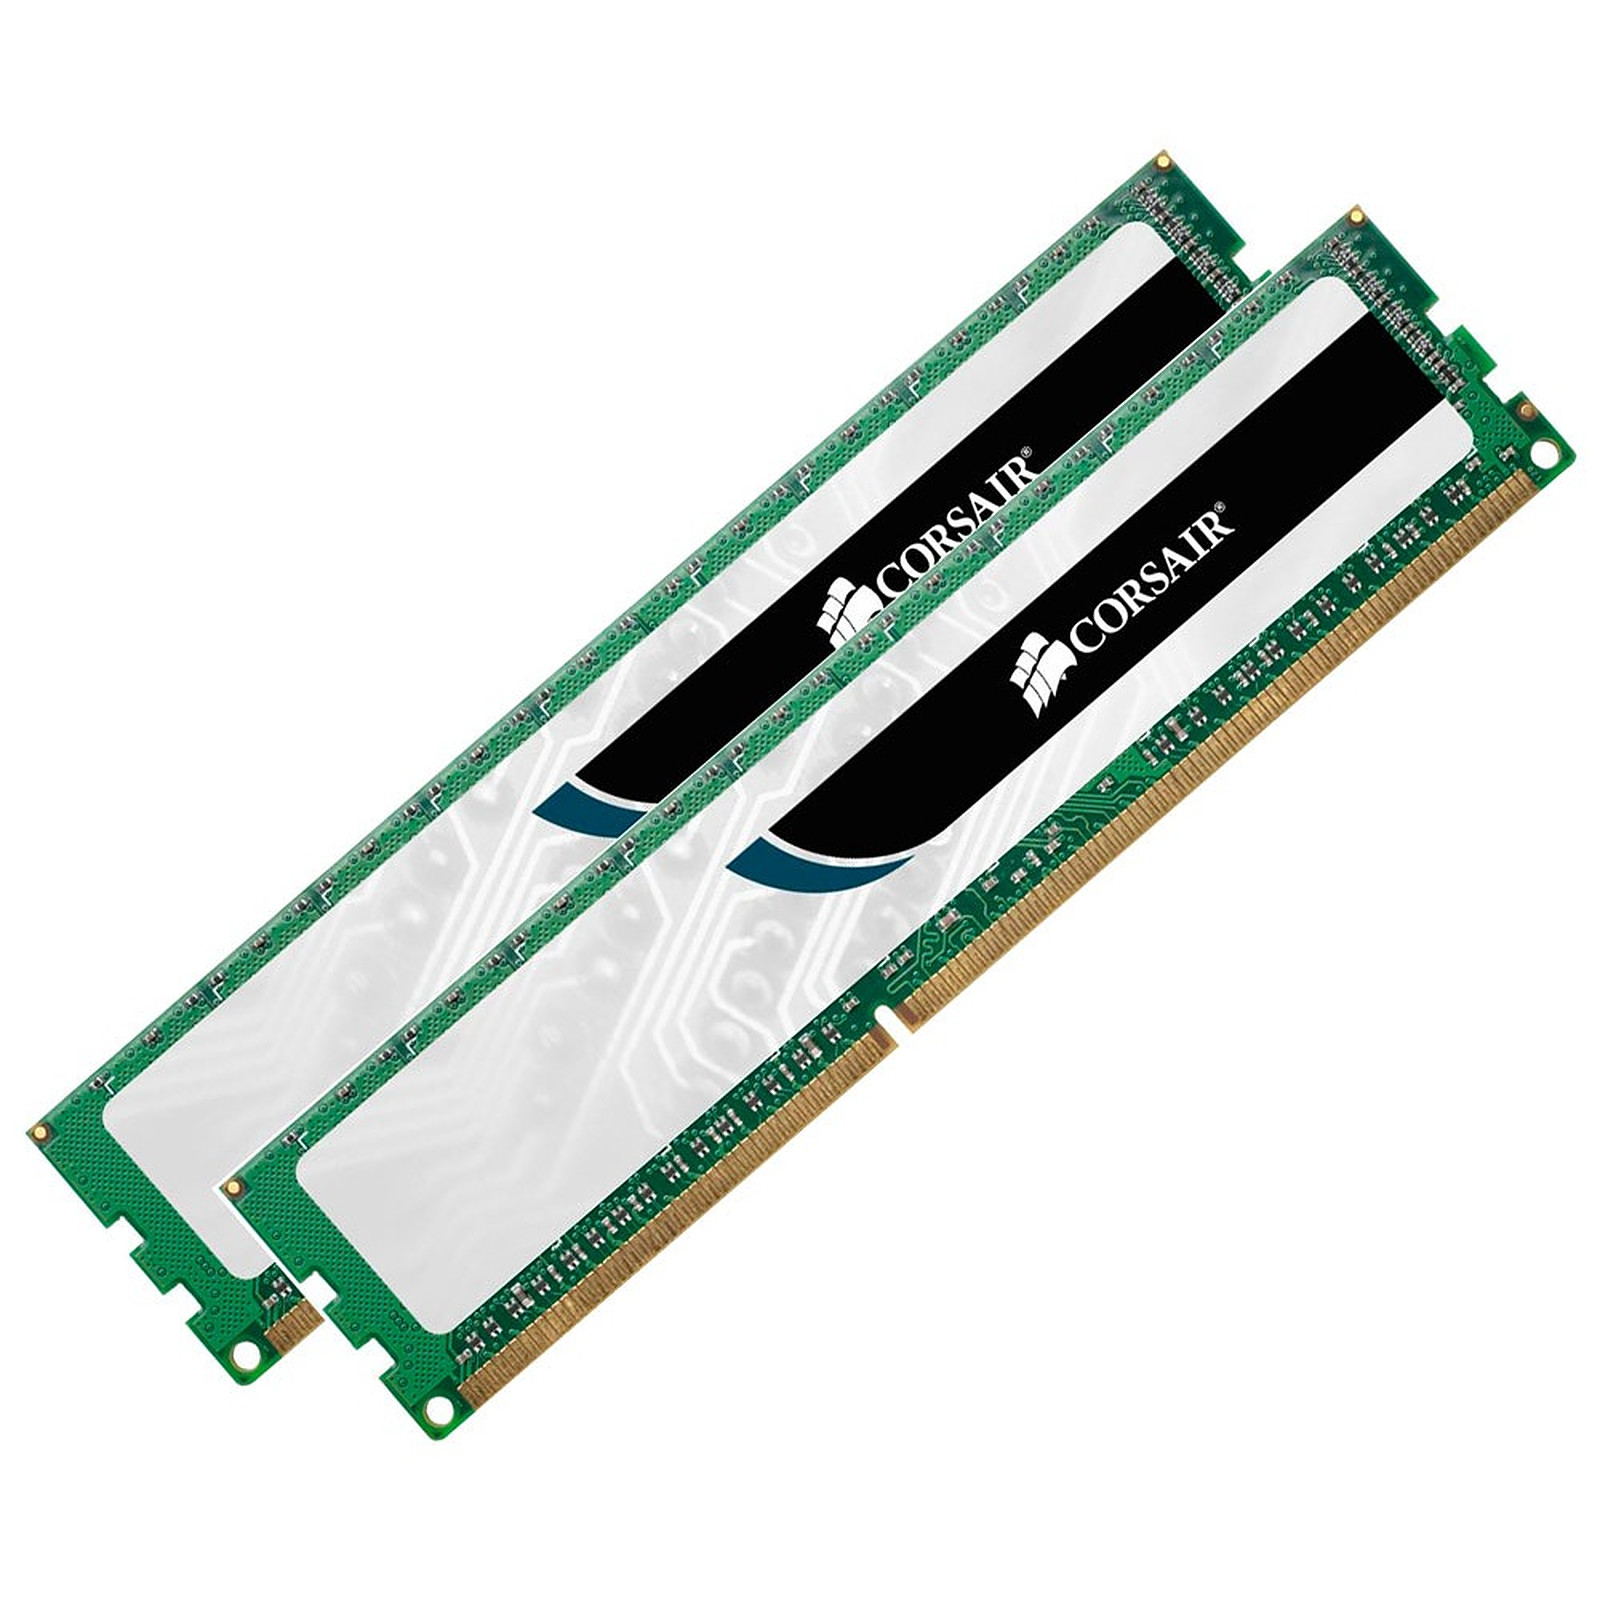 Corsair Value Select 8 Go (2x 4Go) DDR3 1333MHz CL9 - Memoire PC Corsair